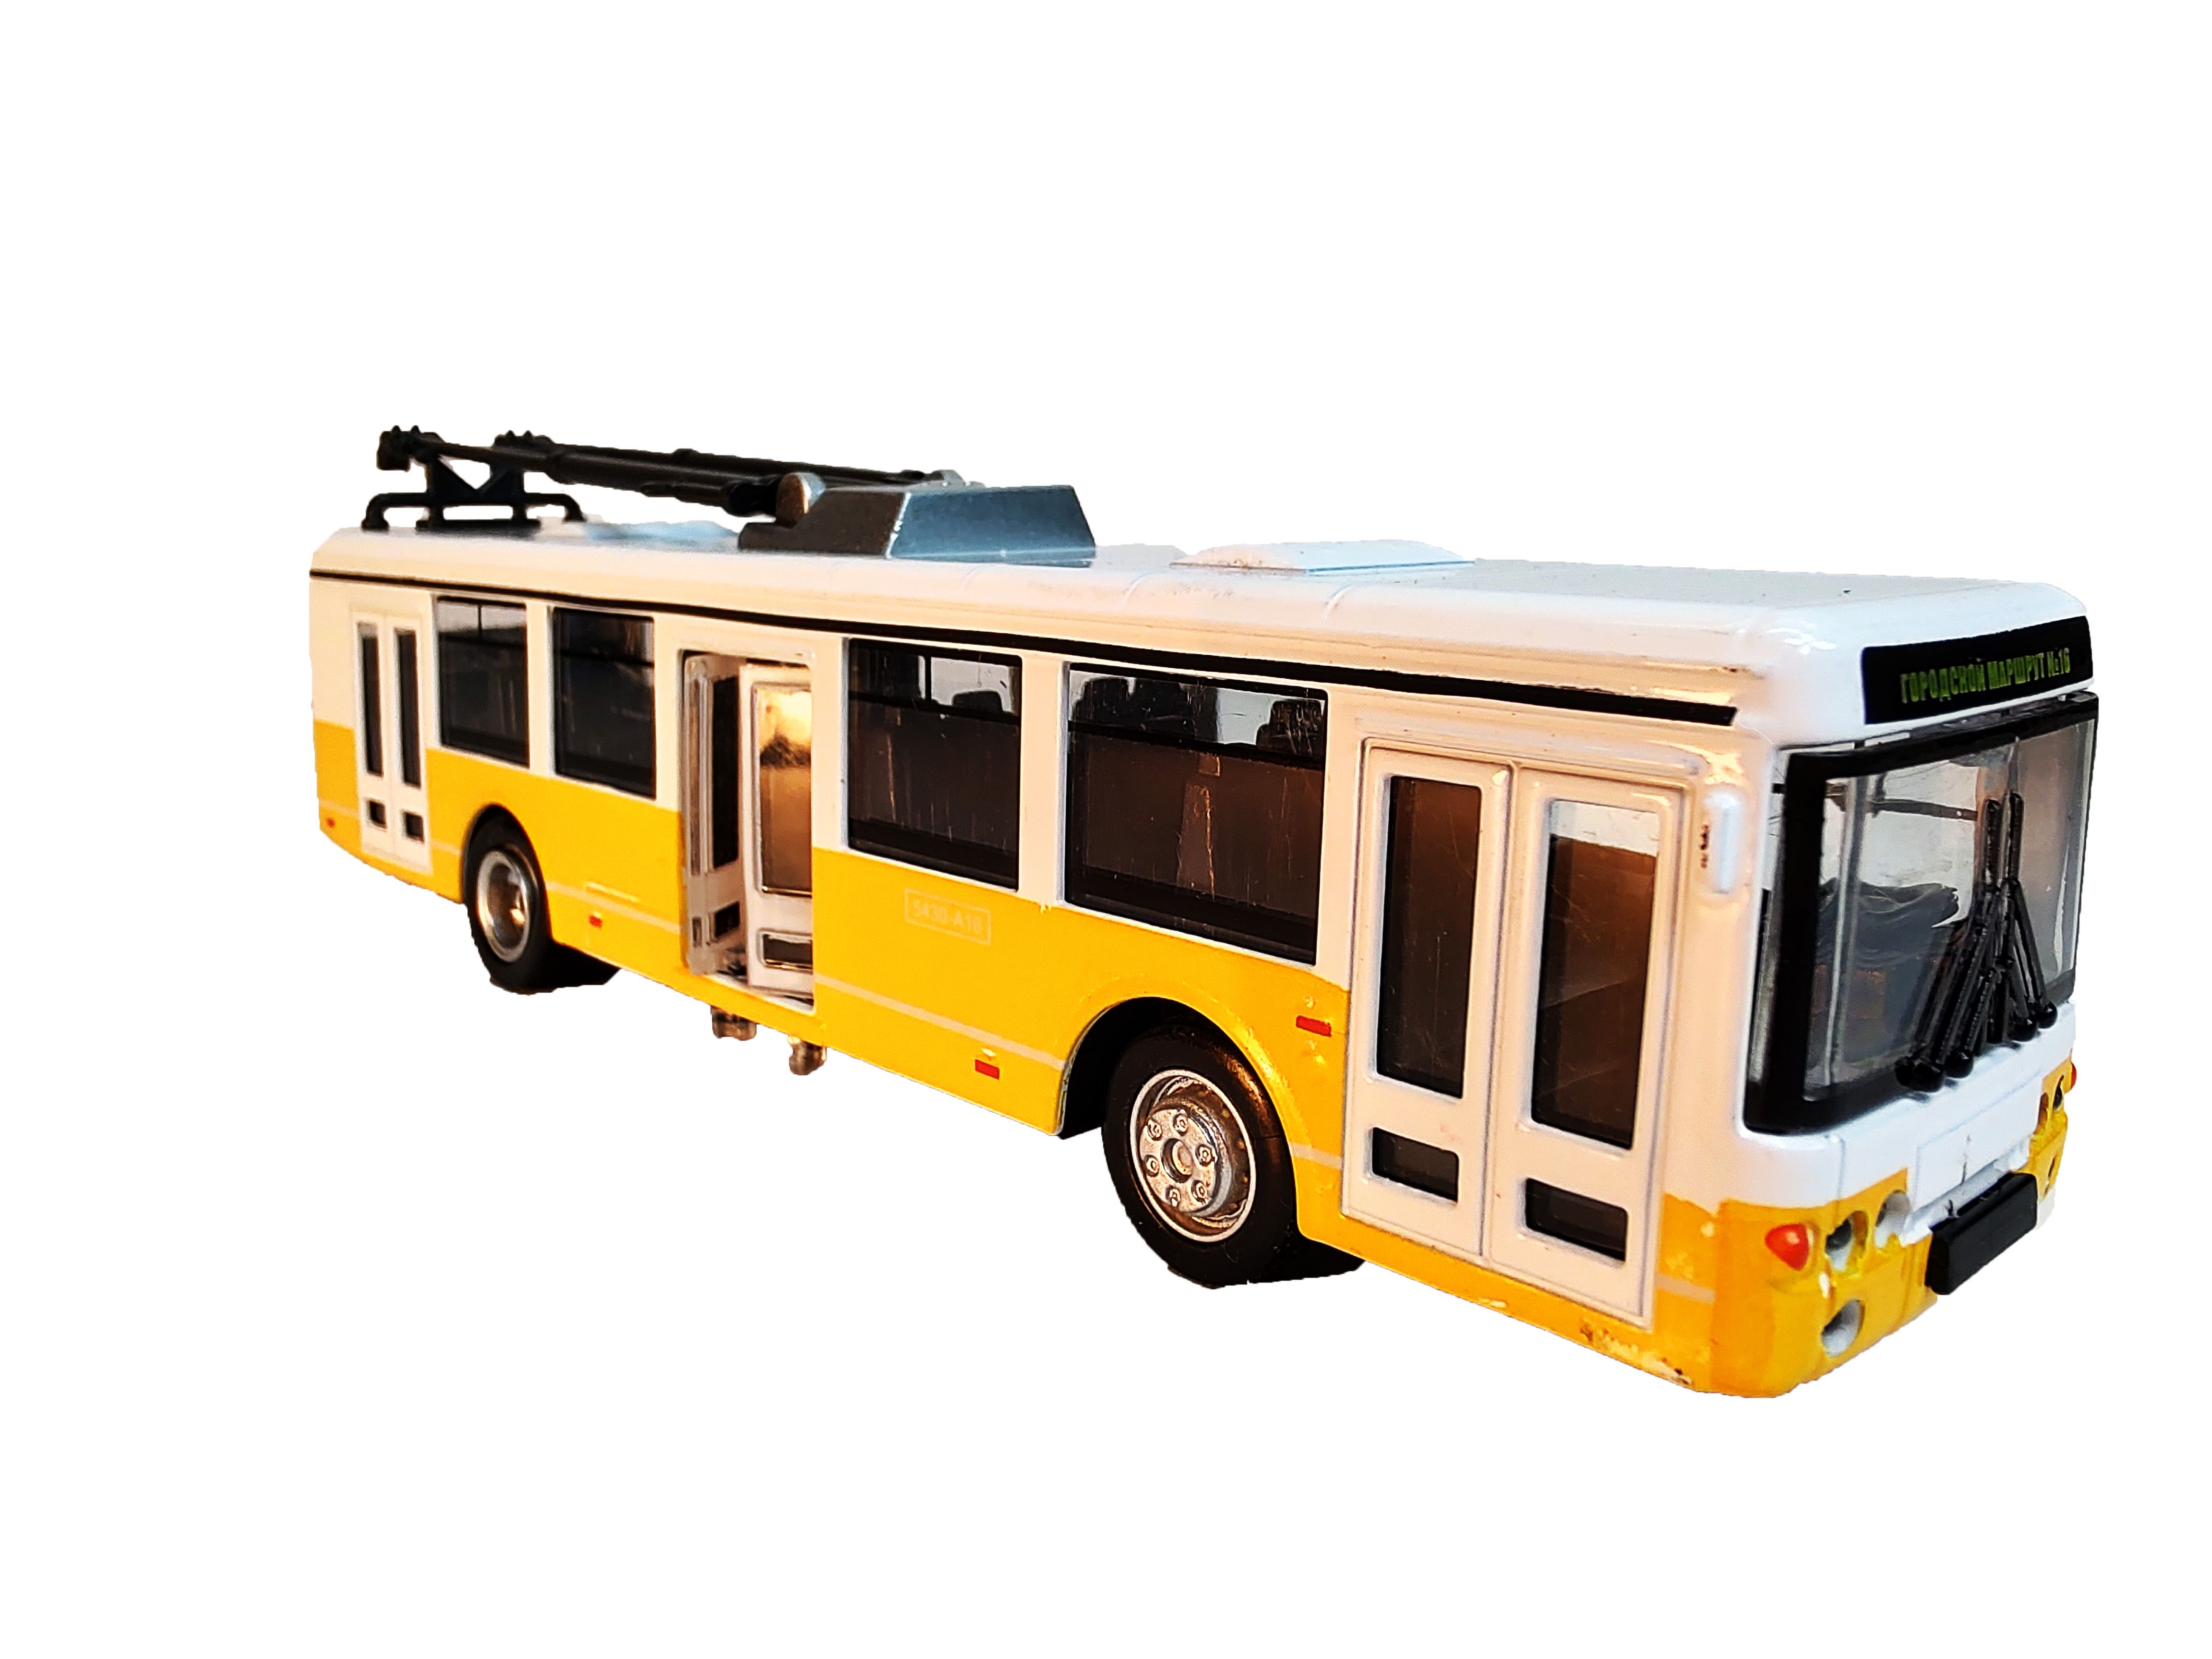 Игрушка троллейбус металлический со светом и звуком. Модели троллейбусов на АЛИЭКСПРЕСС самые дешевые. АЛИЭКСПРЕСС масштабная модель троллейбуса техпомощь. Игрушка троллейбус инерцион со светом и музыкой Bigga.